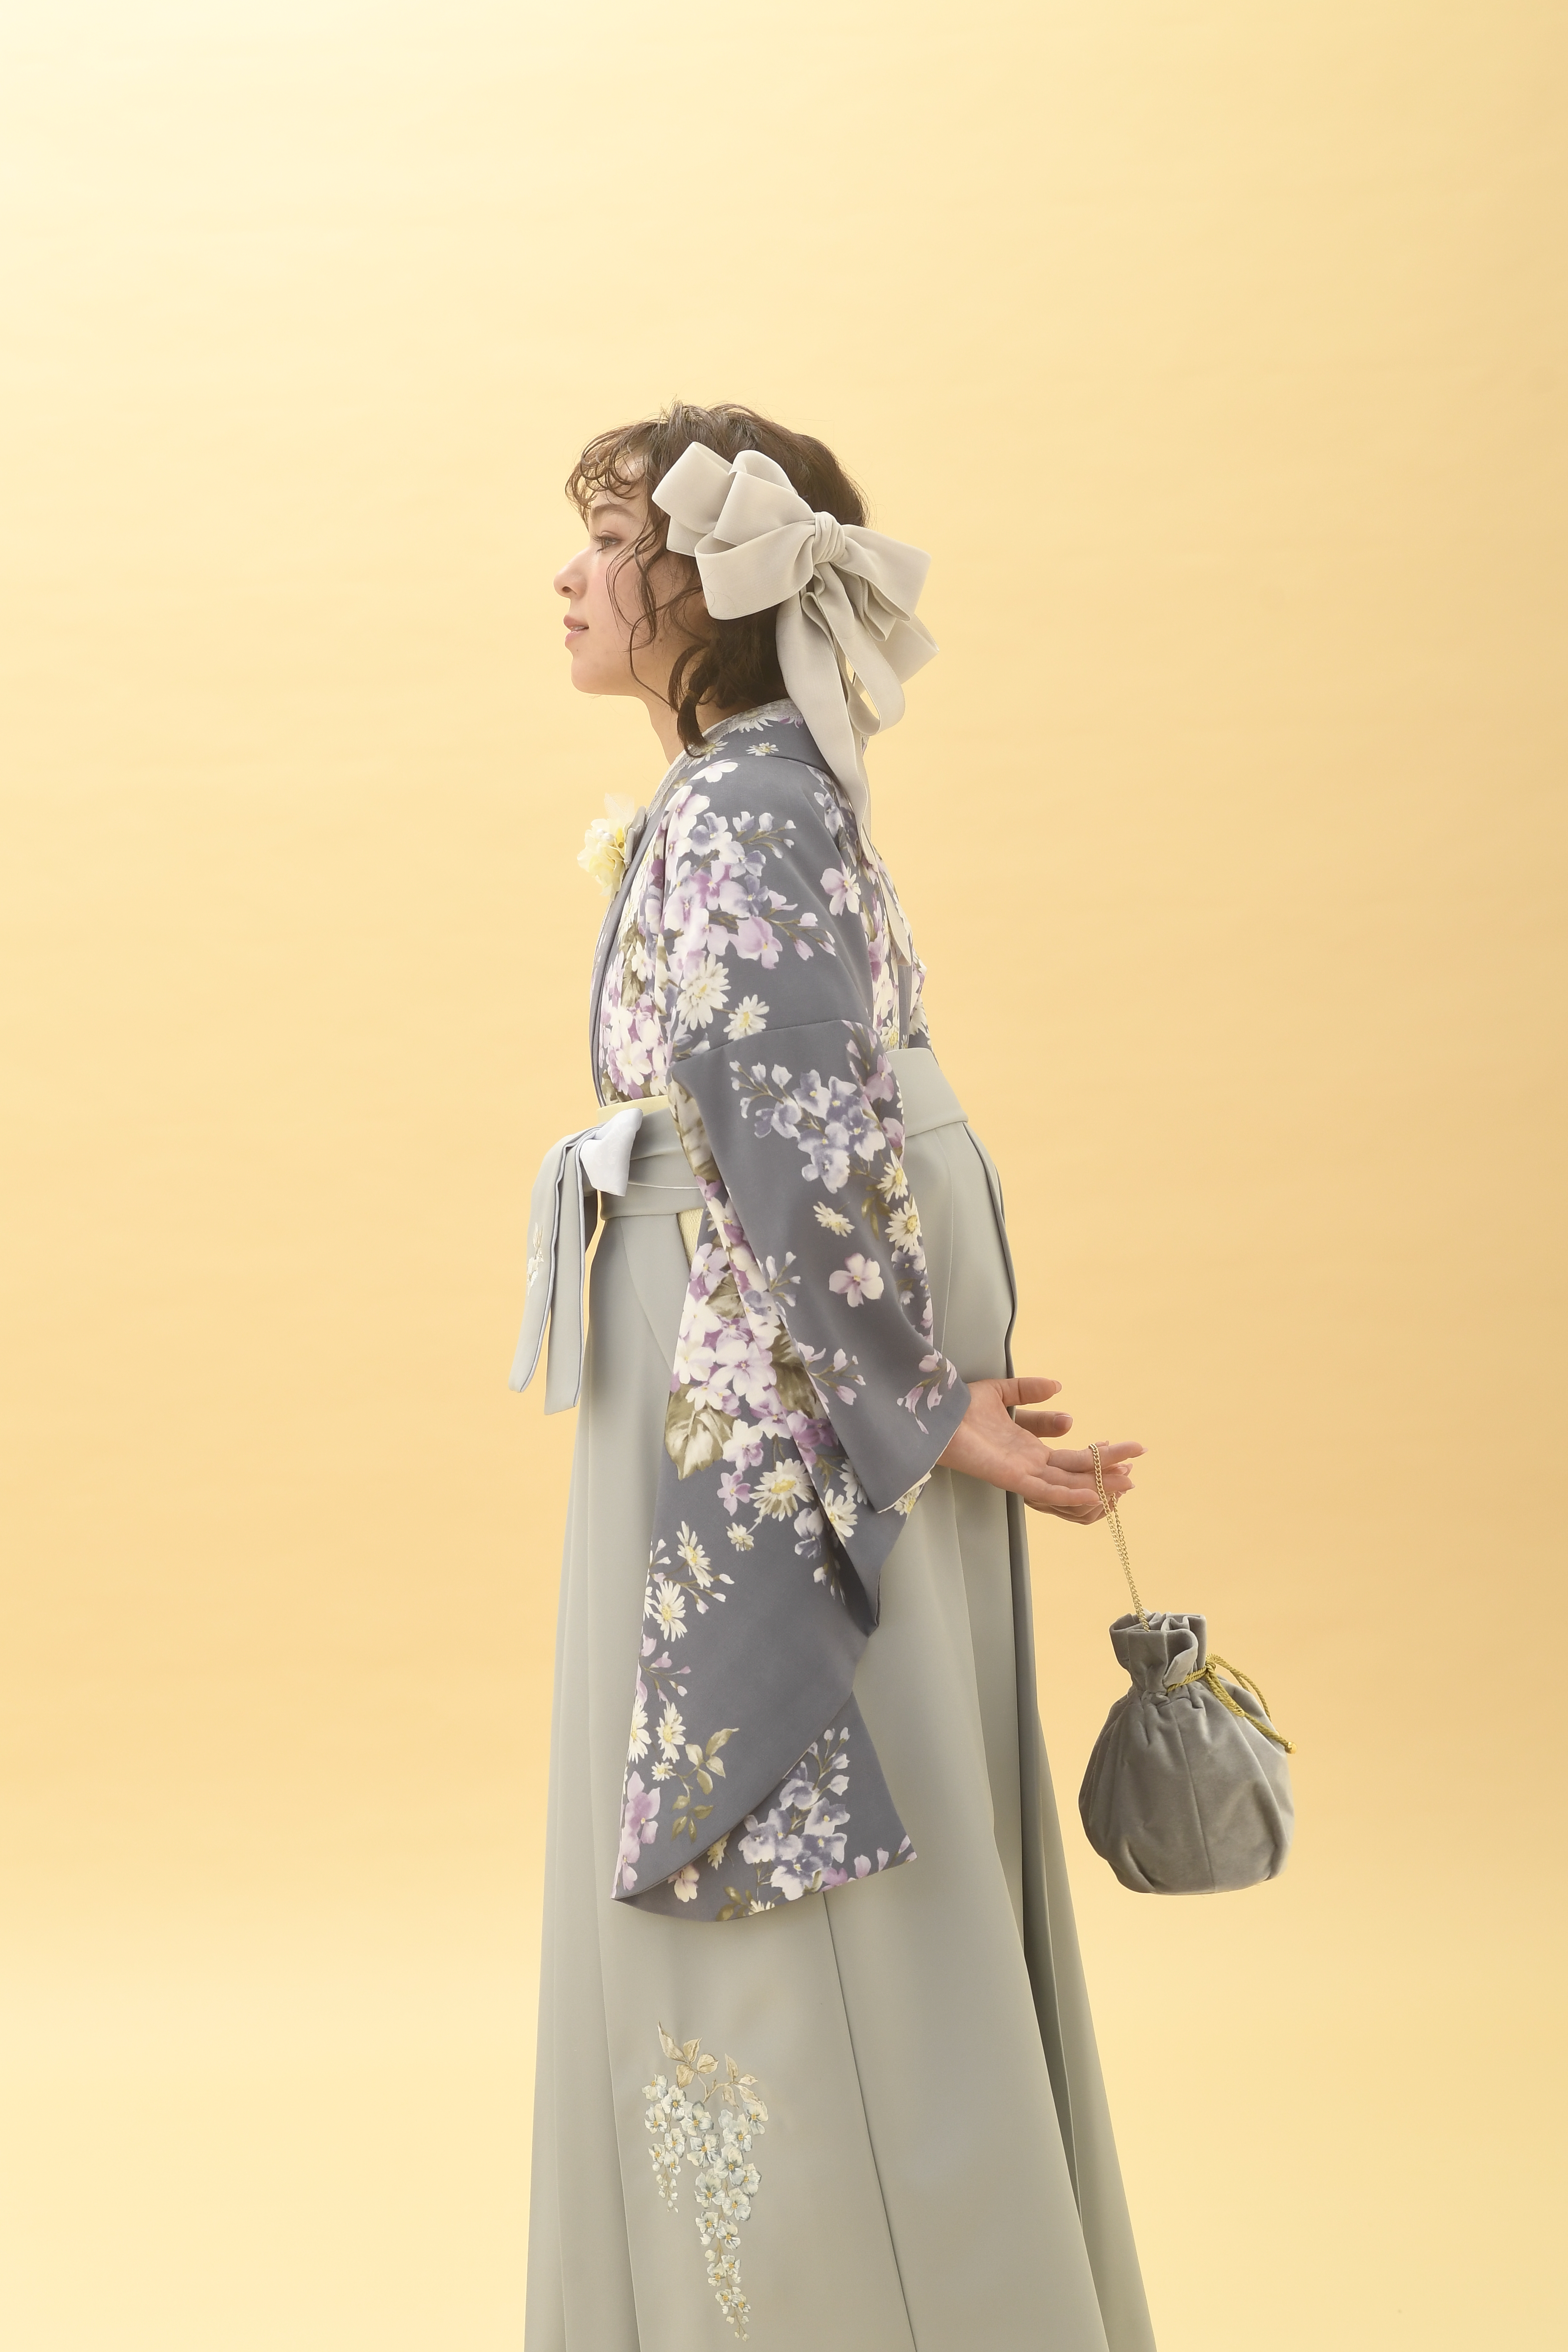 シュガーKブランドの、グレー地に白の小花柄の二尺袖と、グレーの袴の女性用卒業式袴を着用したアップ写真